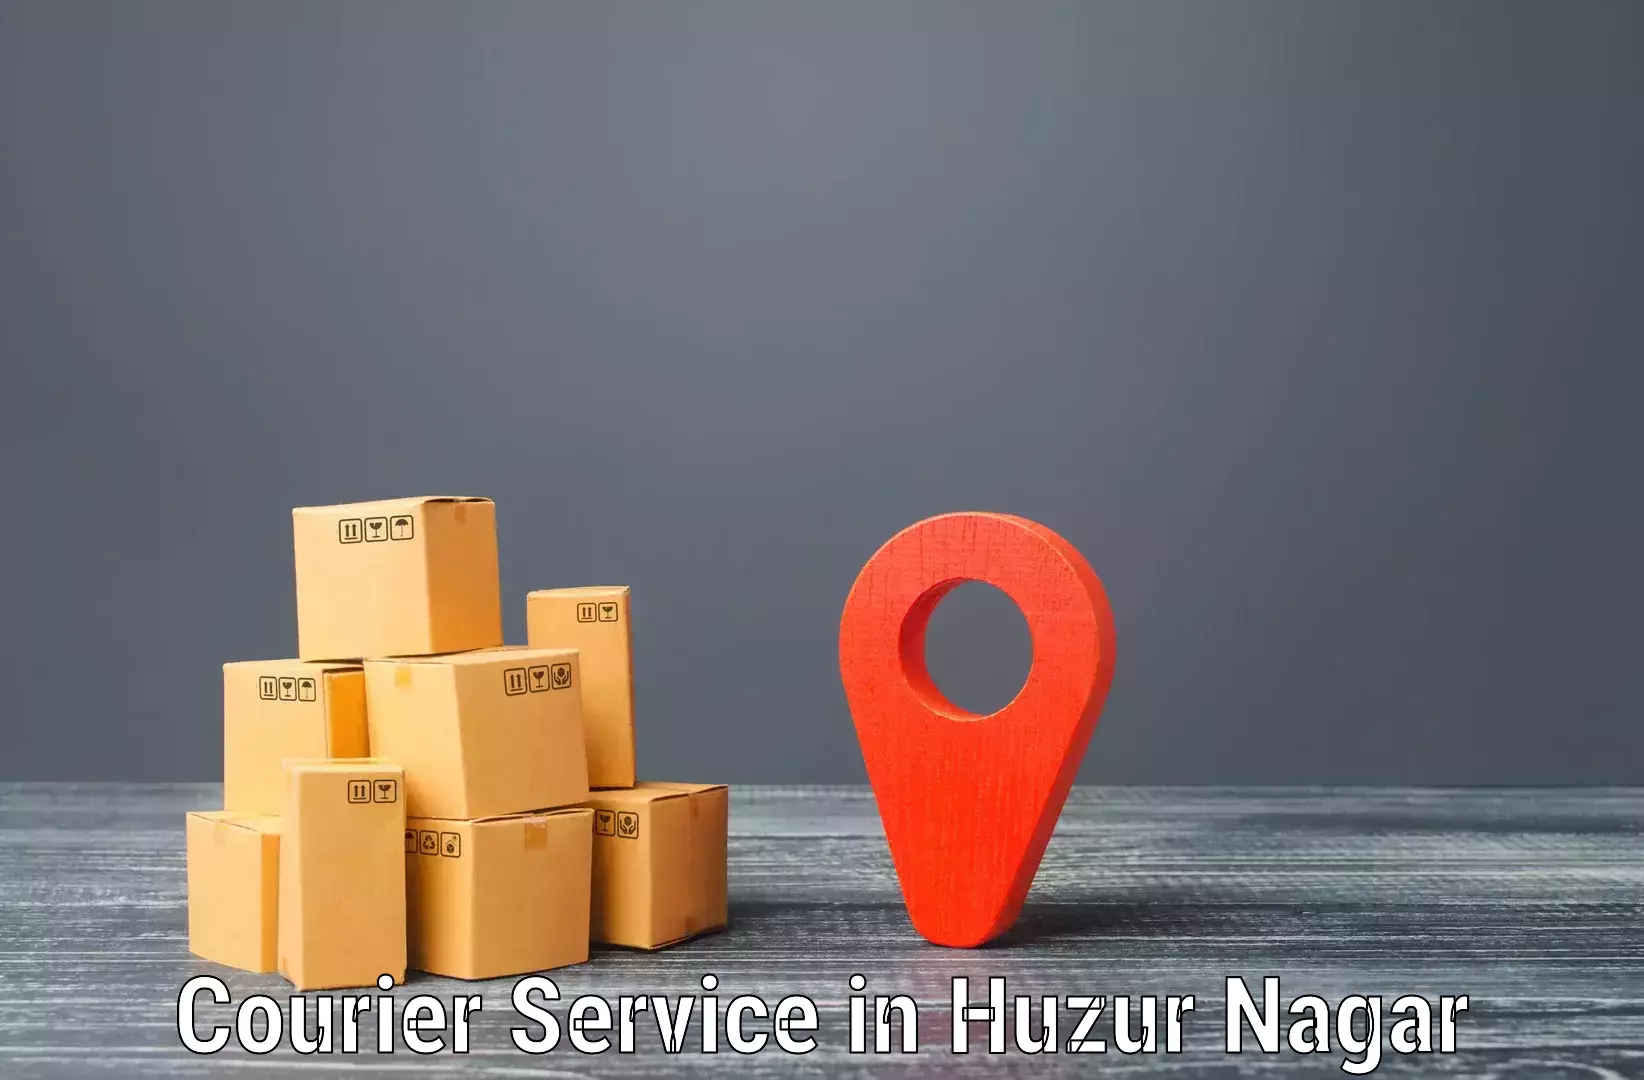 Efficient freight service in Huzur Nagar